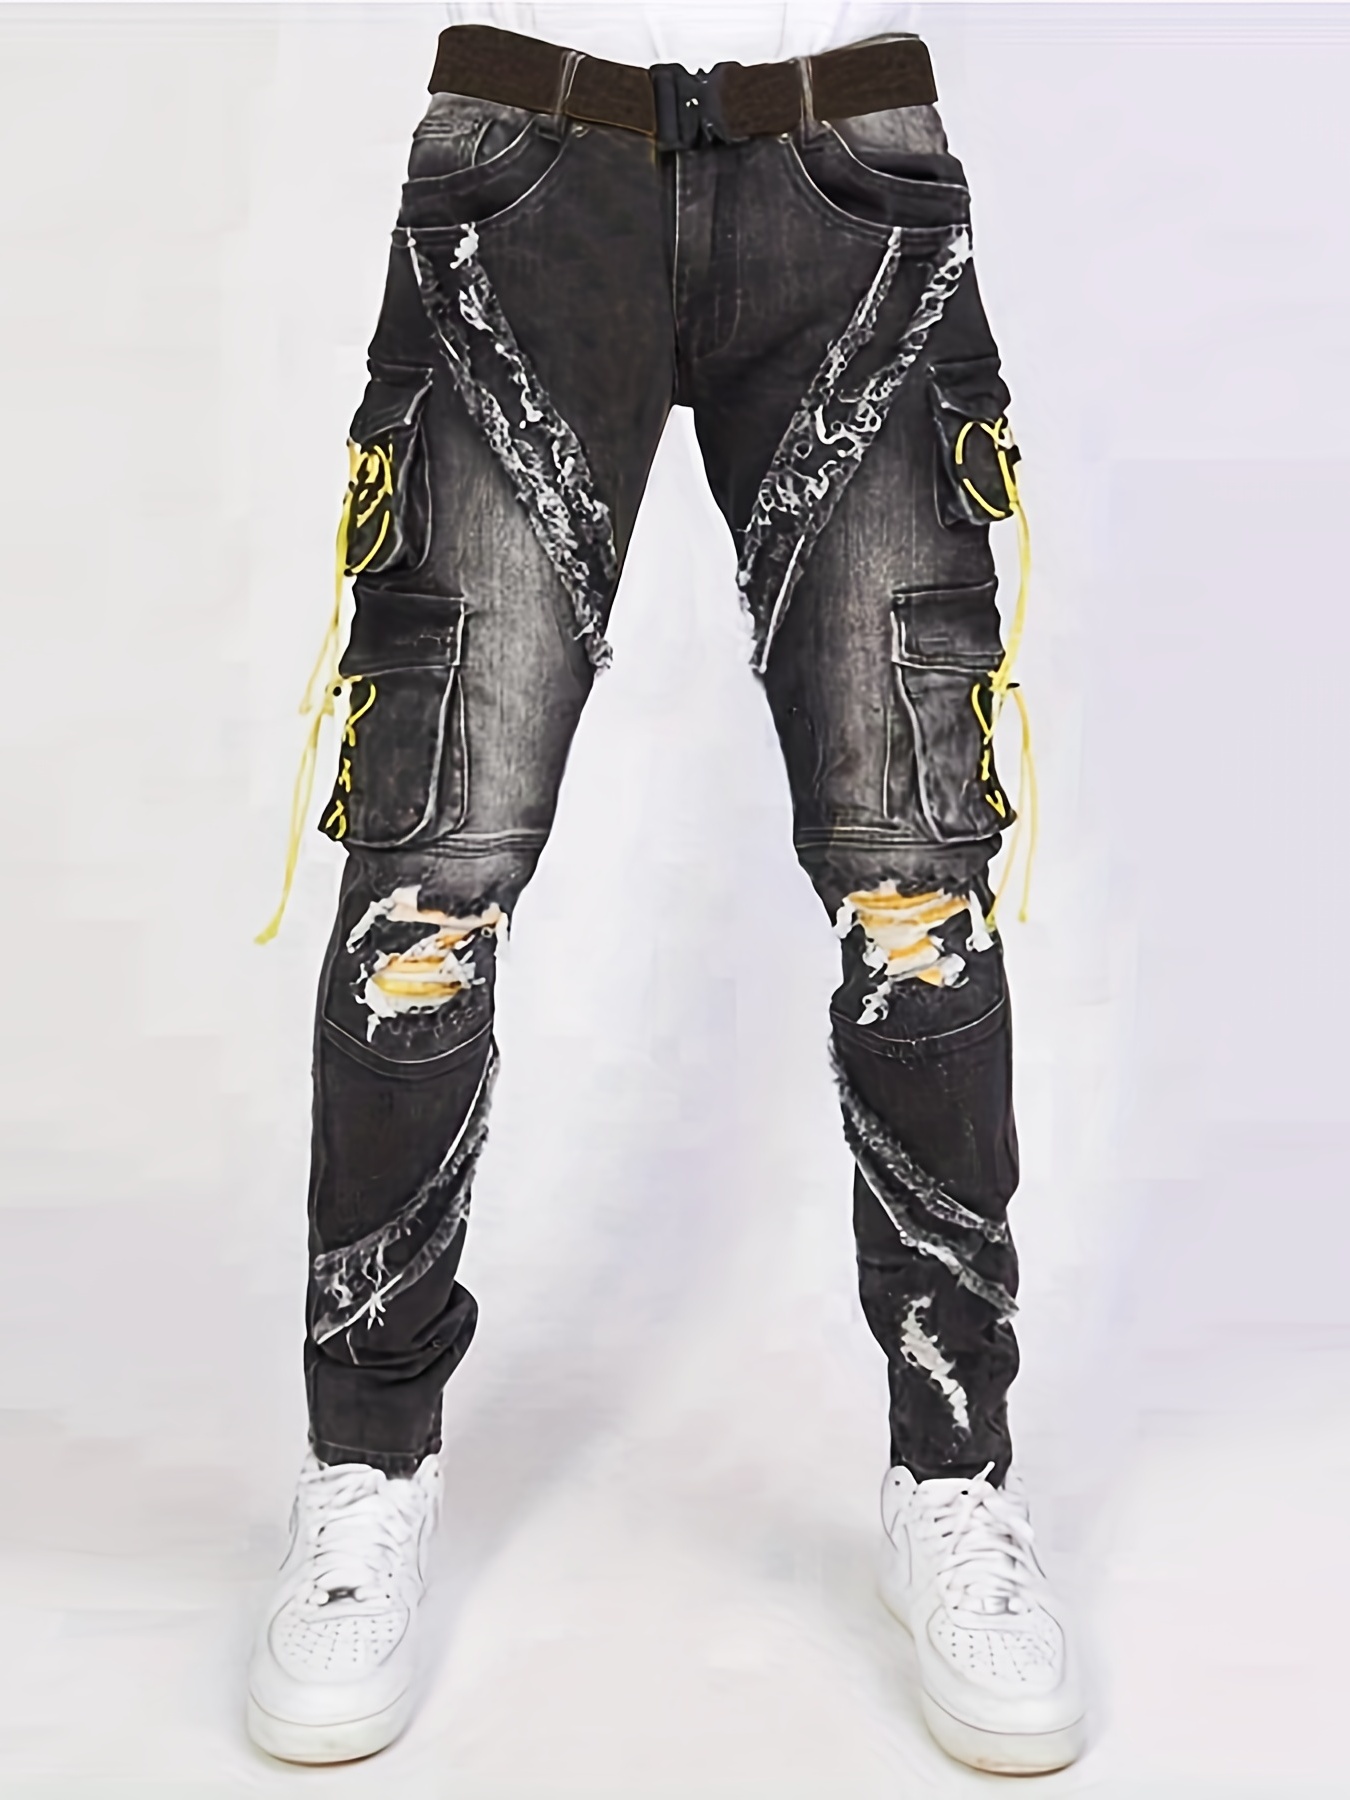 Regular Fit Pista Lime Denim Cargo & Jacket Co-ord Set for Men - – Peplos  Jeans